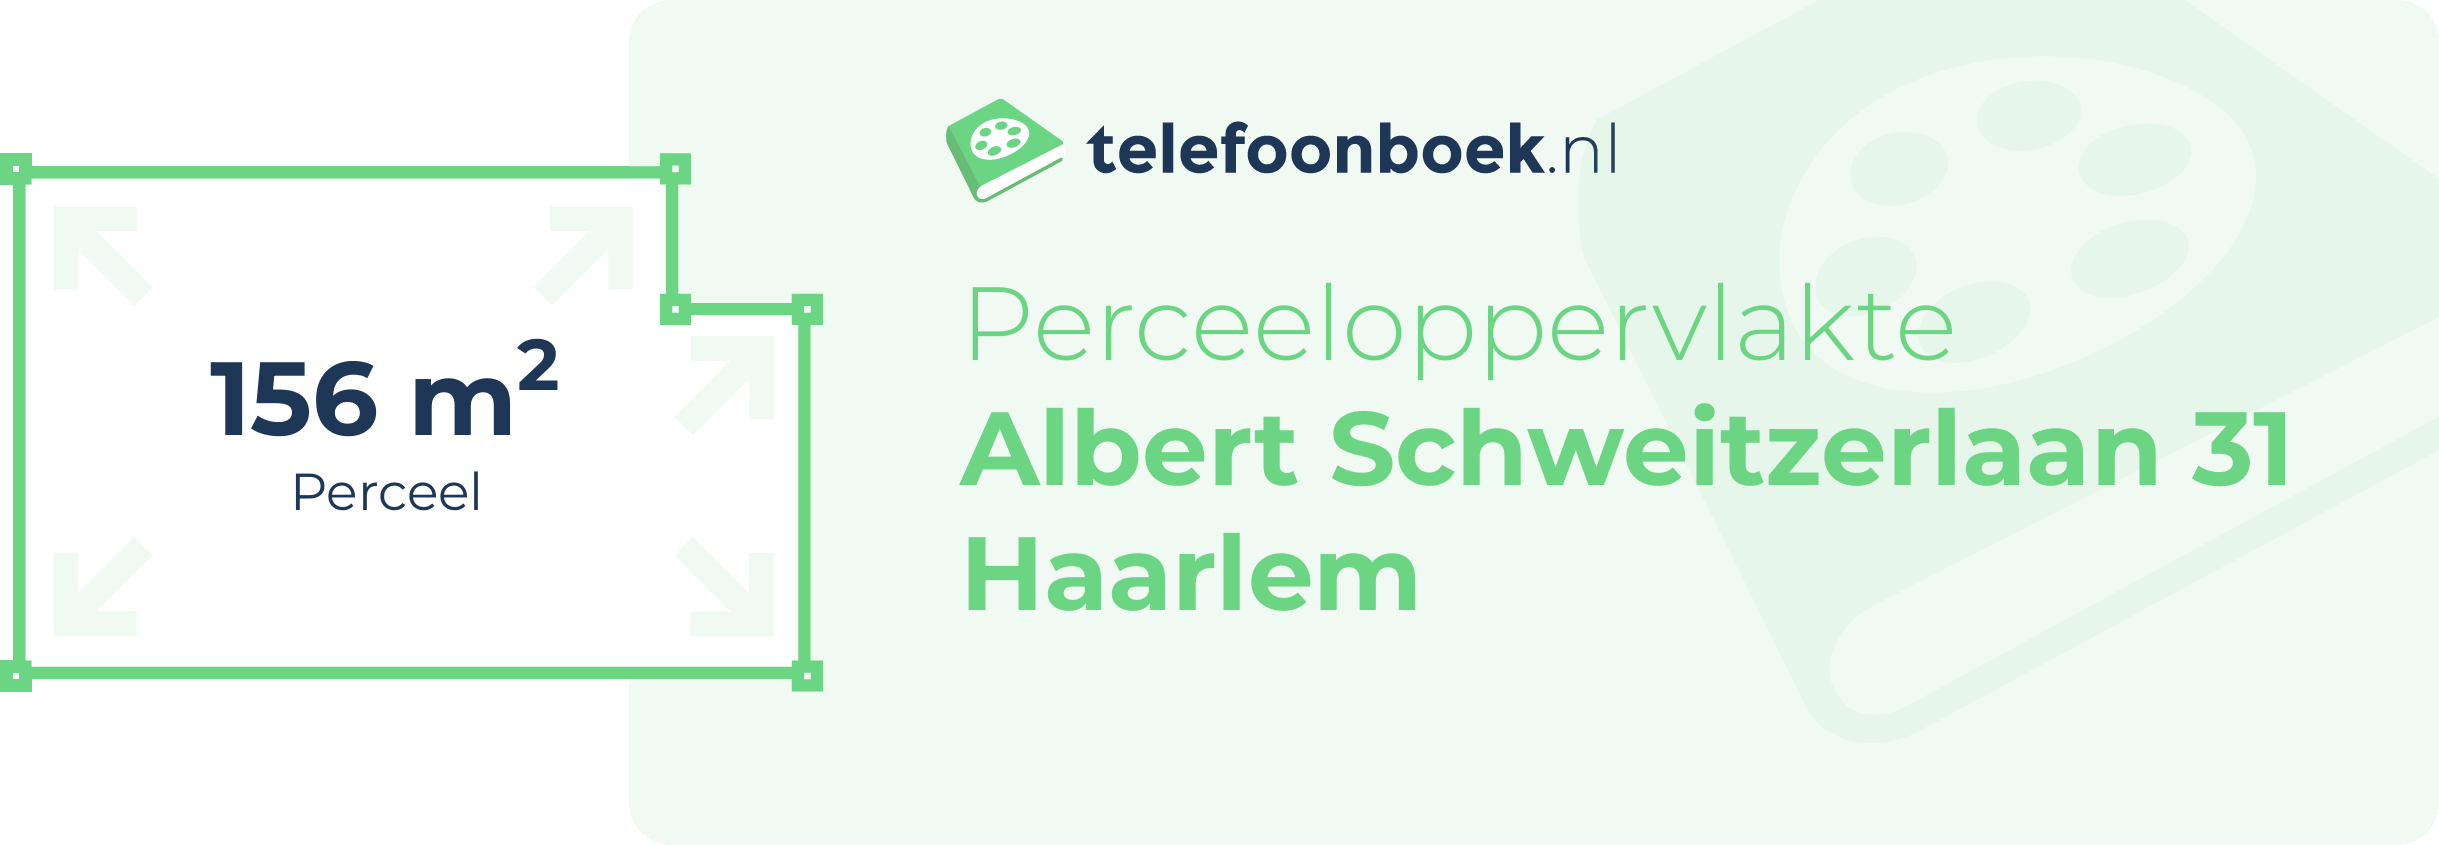 Perceeloppervlakte Albert Schweitzerlaan 31 Haarlem